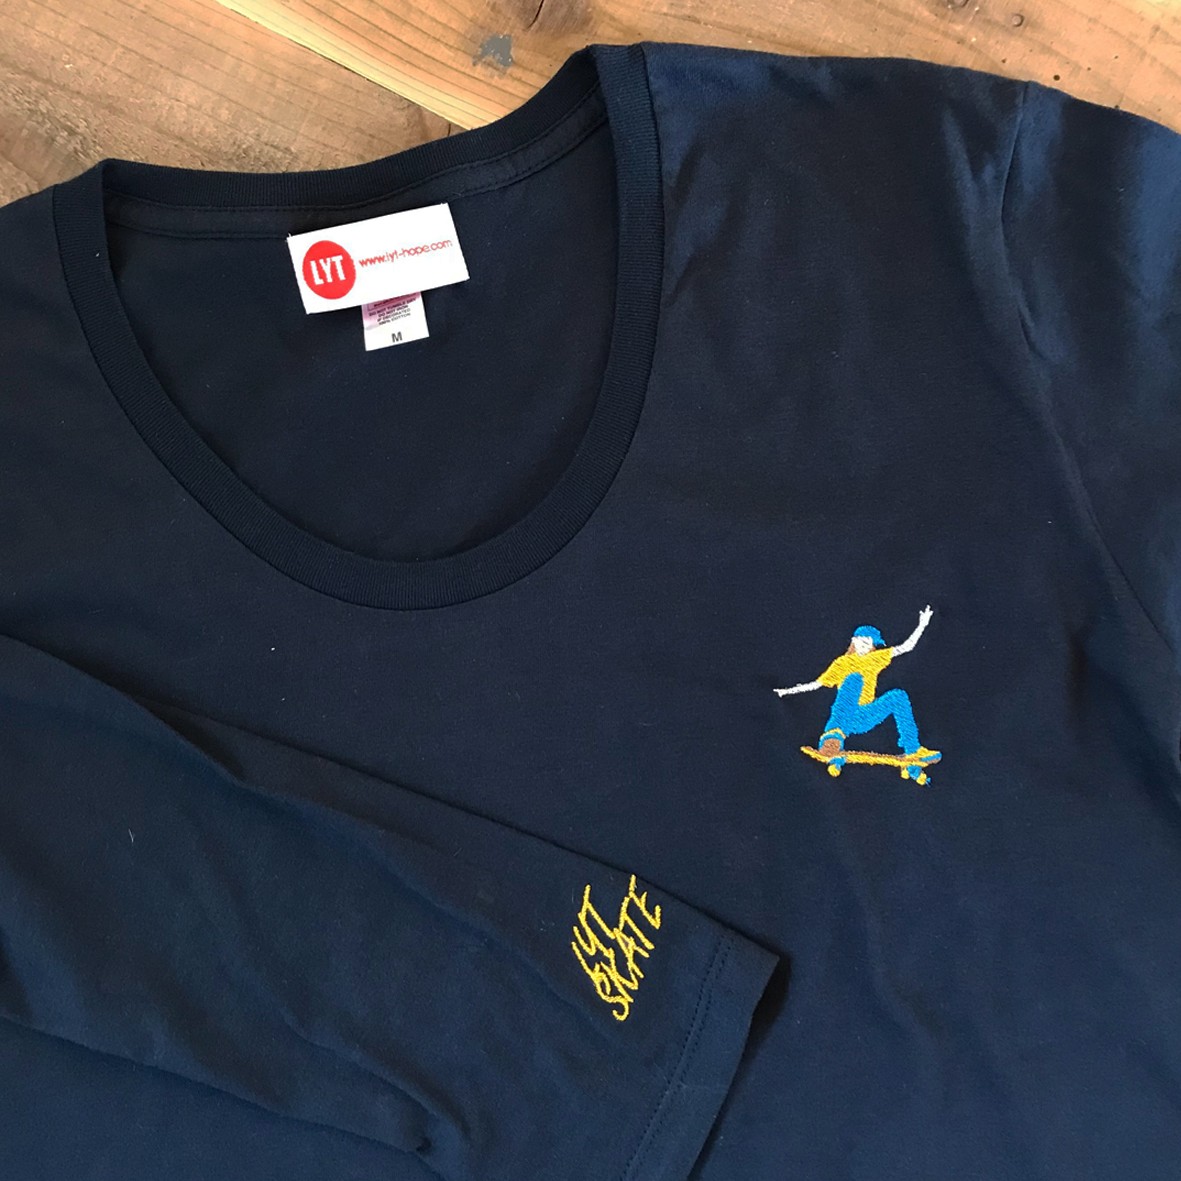 スケートボード 刺繍 Uネック ロングスリーブ Tシャツ Iichi ハンドメイド クラフト作品 手仕事品の通販